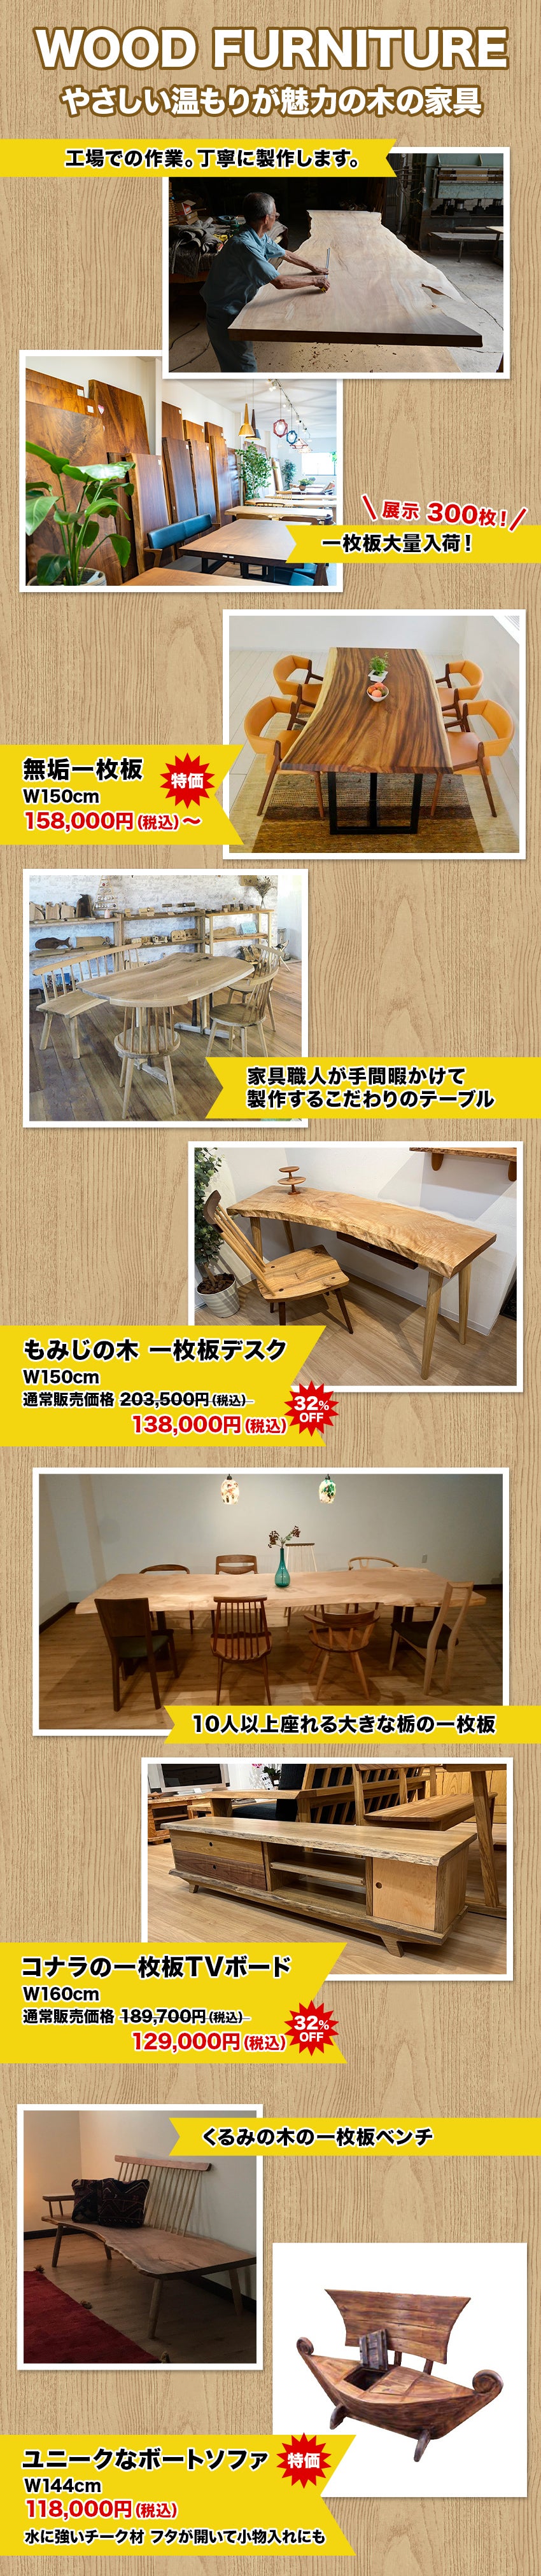 木の家具